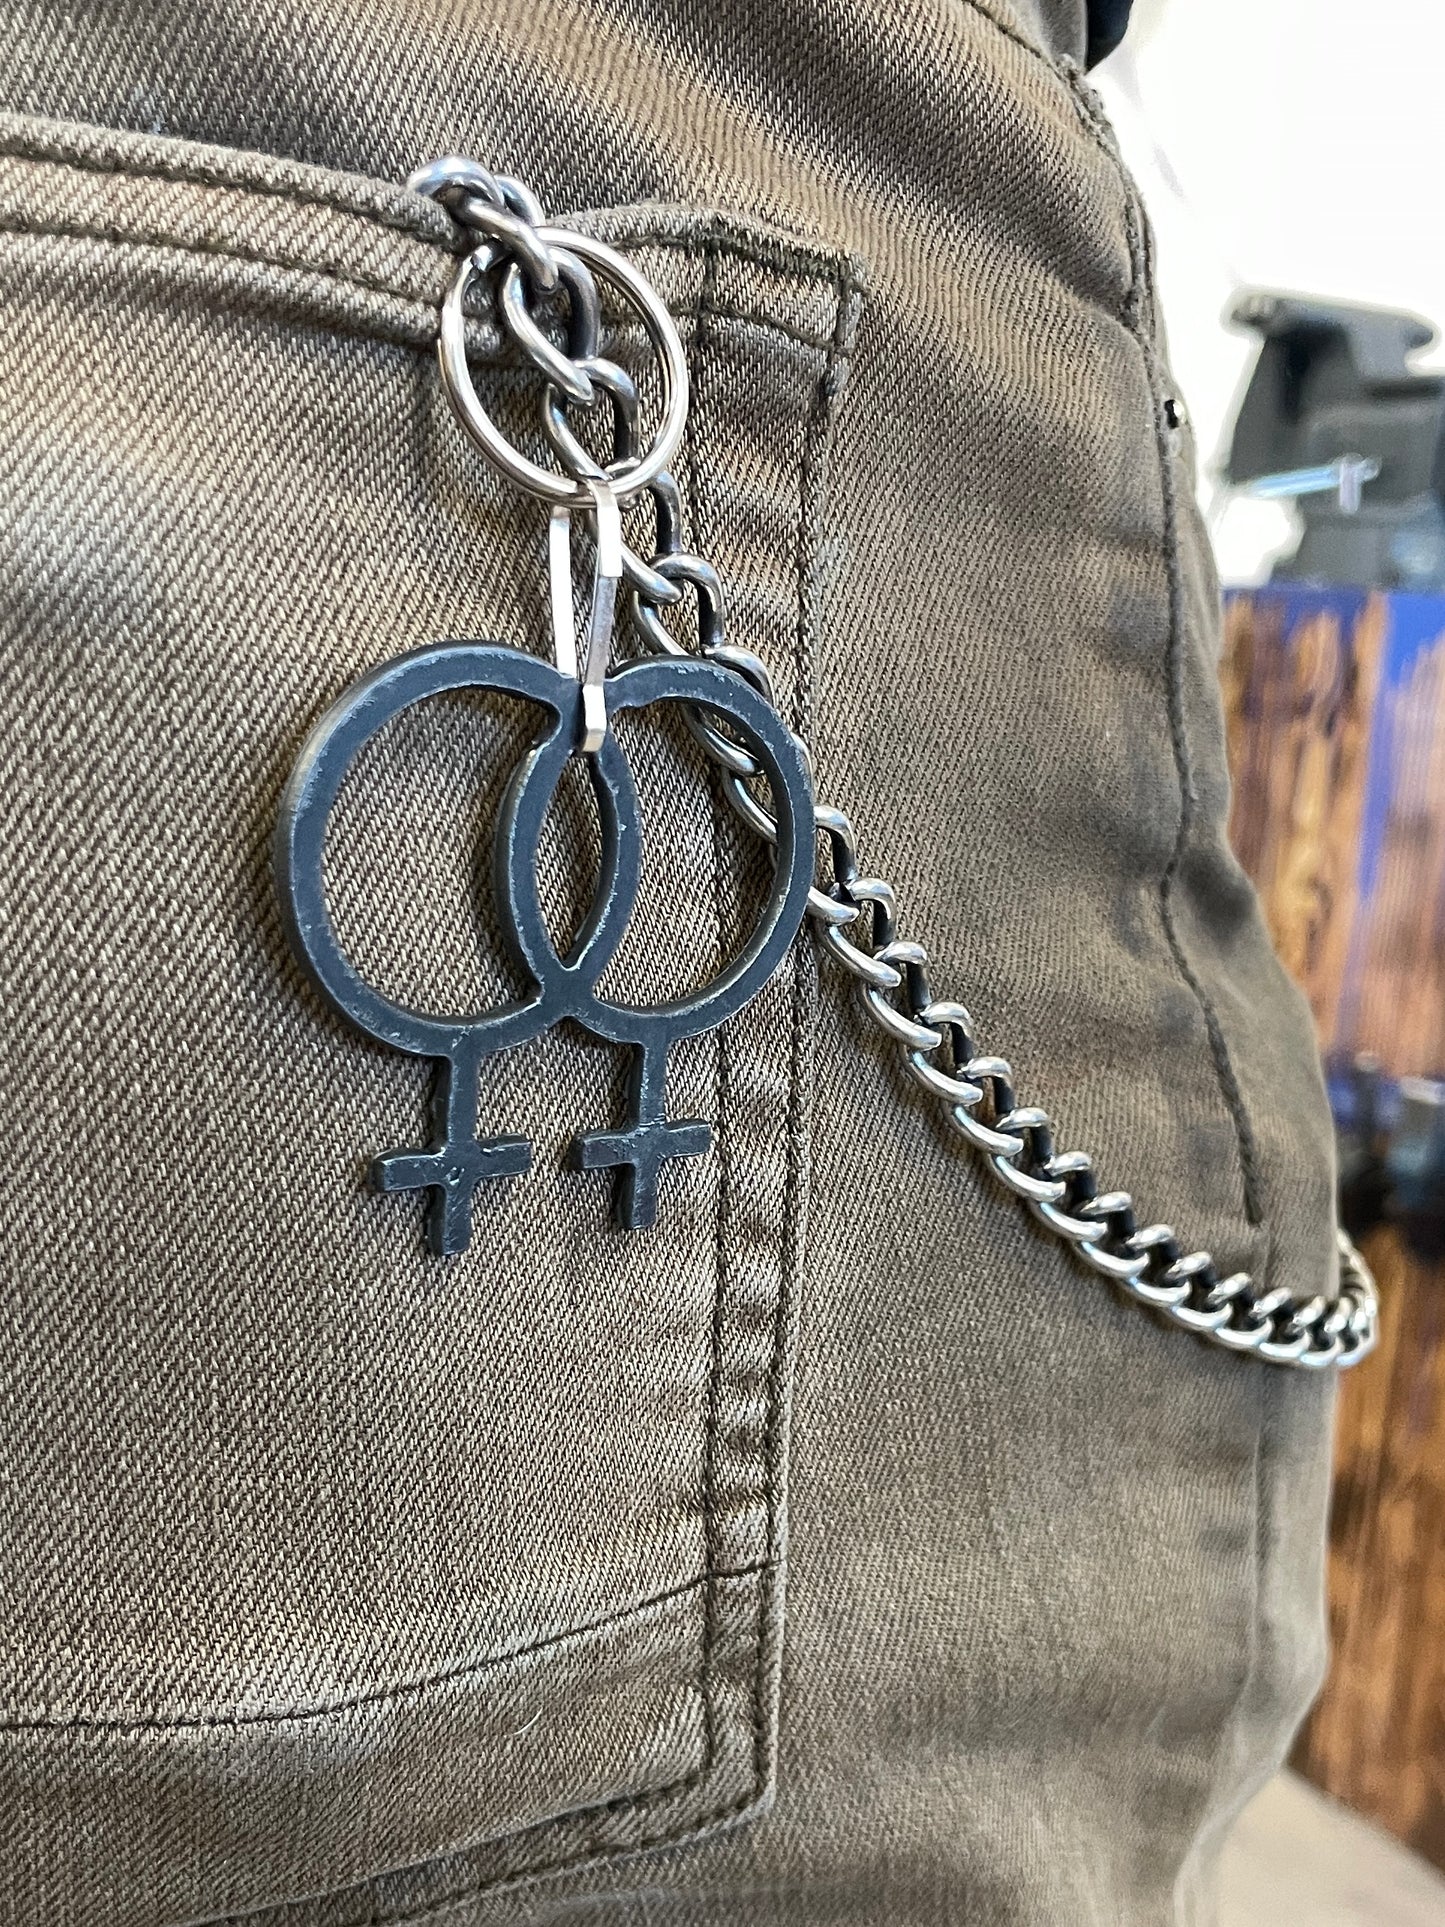 Pride Keychain  - Lesbian/WLW